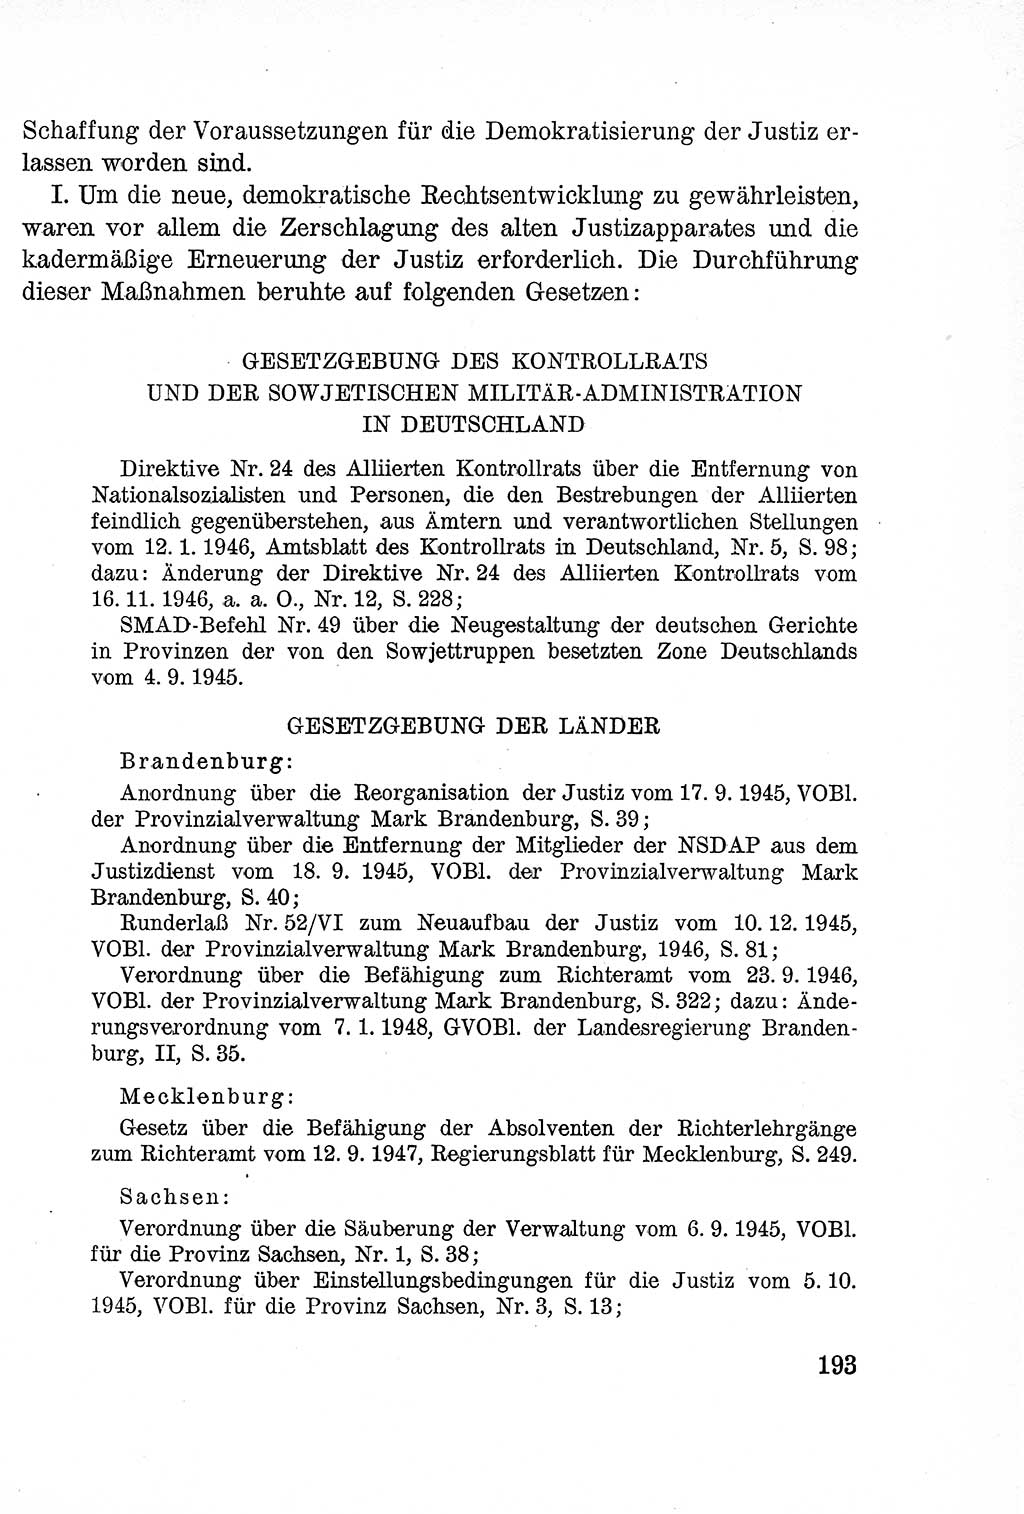 Lehrbuch des Strafrechts der Deutschen Demokratischen Republik (DDR), Allgemeiner Teil 1957, Seite 193 (Lb. Strafr. DDR AT 1957, S. 193)